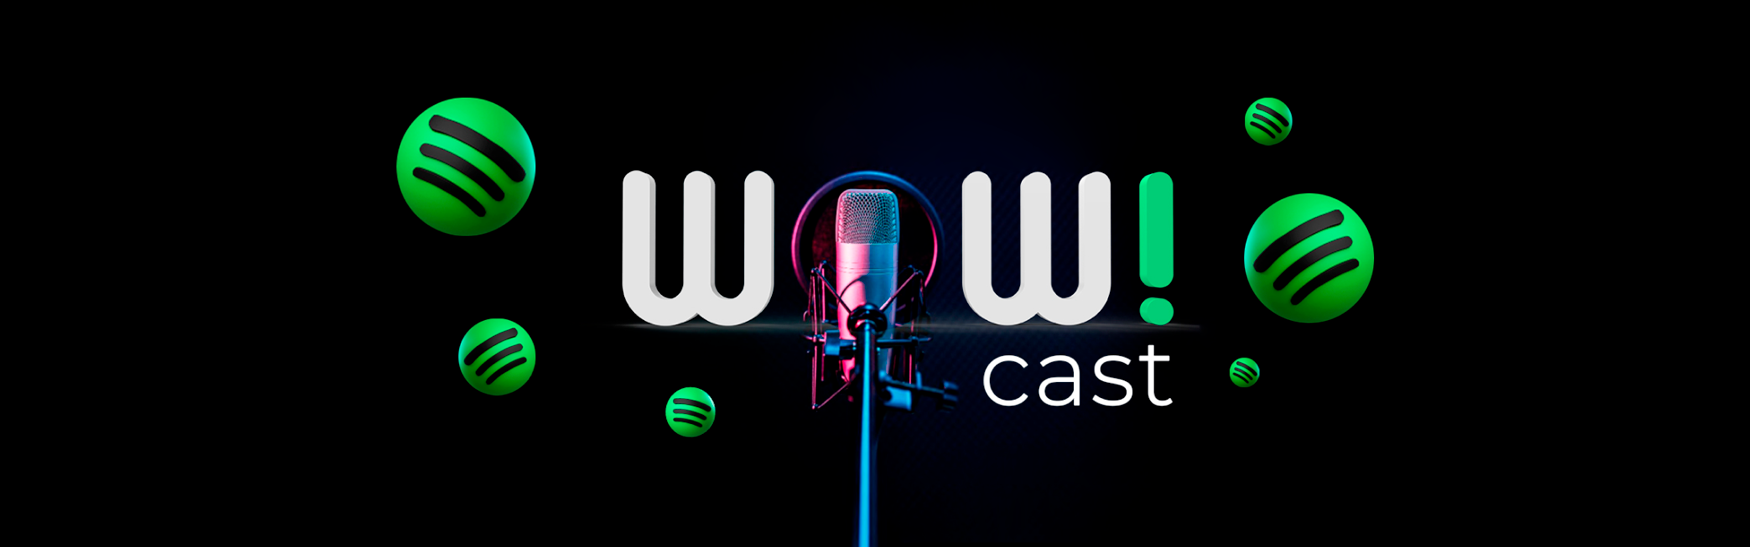 Descubre el mundo del CX

Escucha nuestro podcast en Spotify